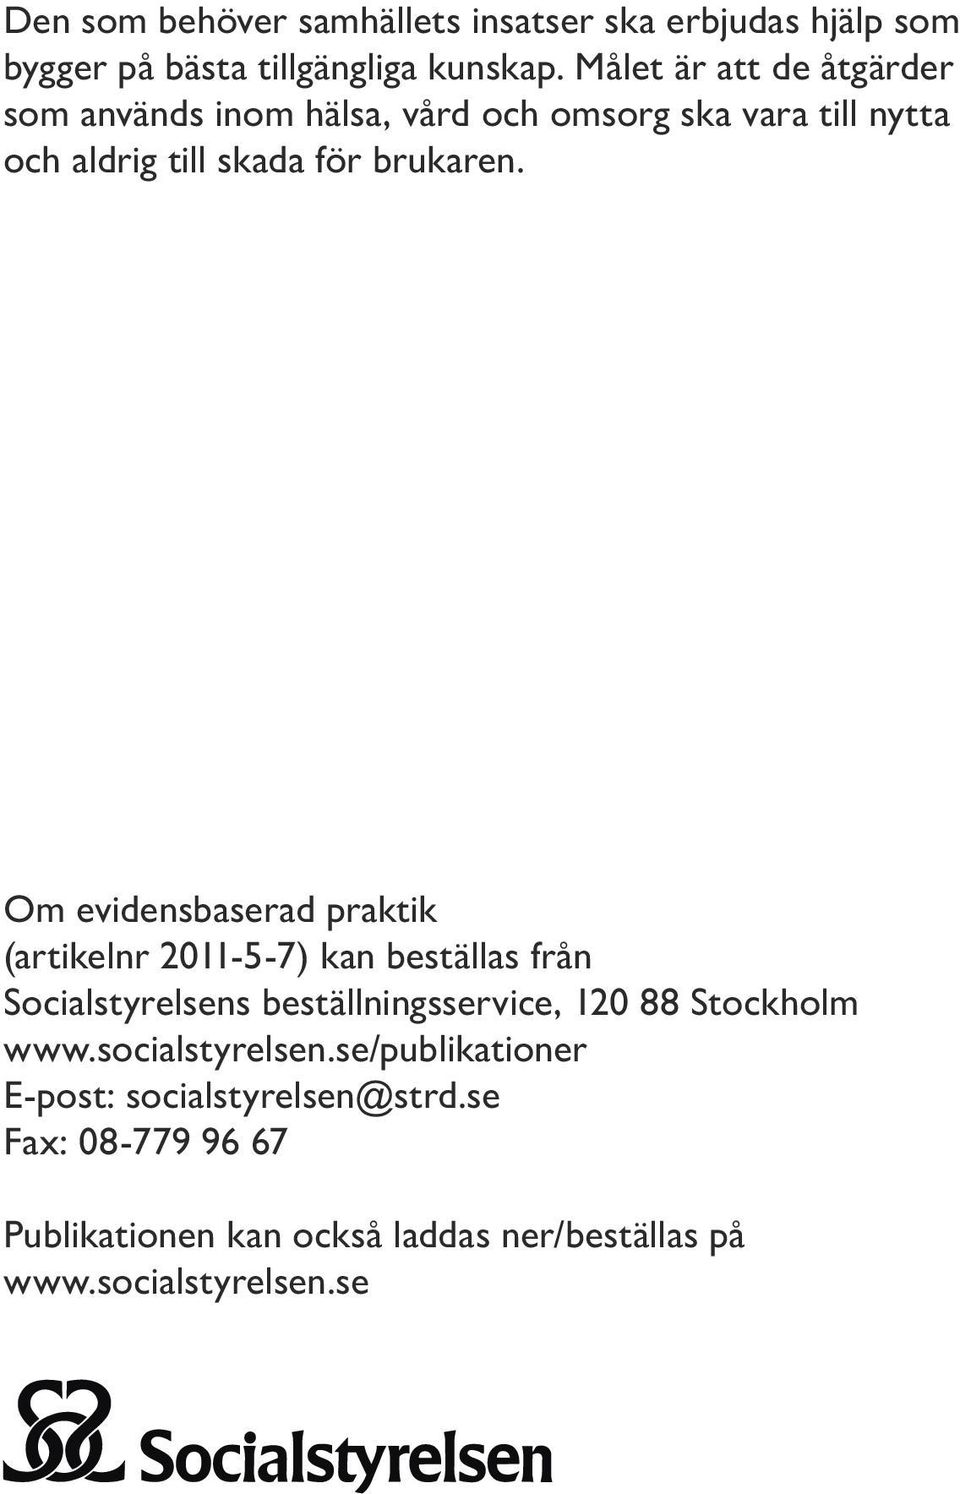 Om evidensbaserad praktik (artikelnr 2011-5-7) kan beställas från Socialstyrelsens beställningsservice, 120 88 Stockholm